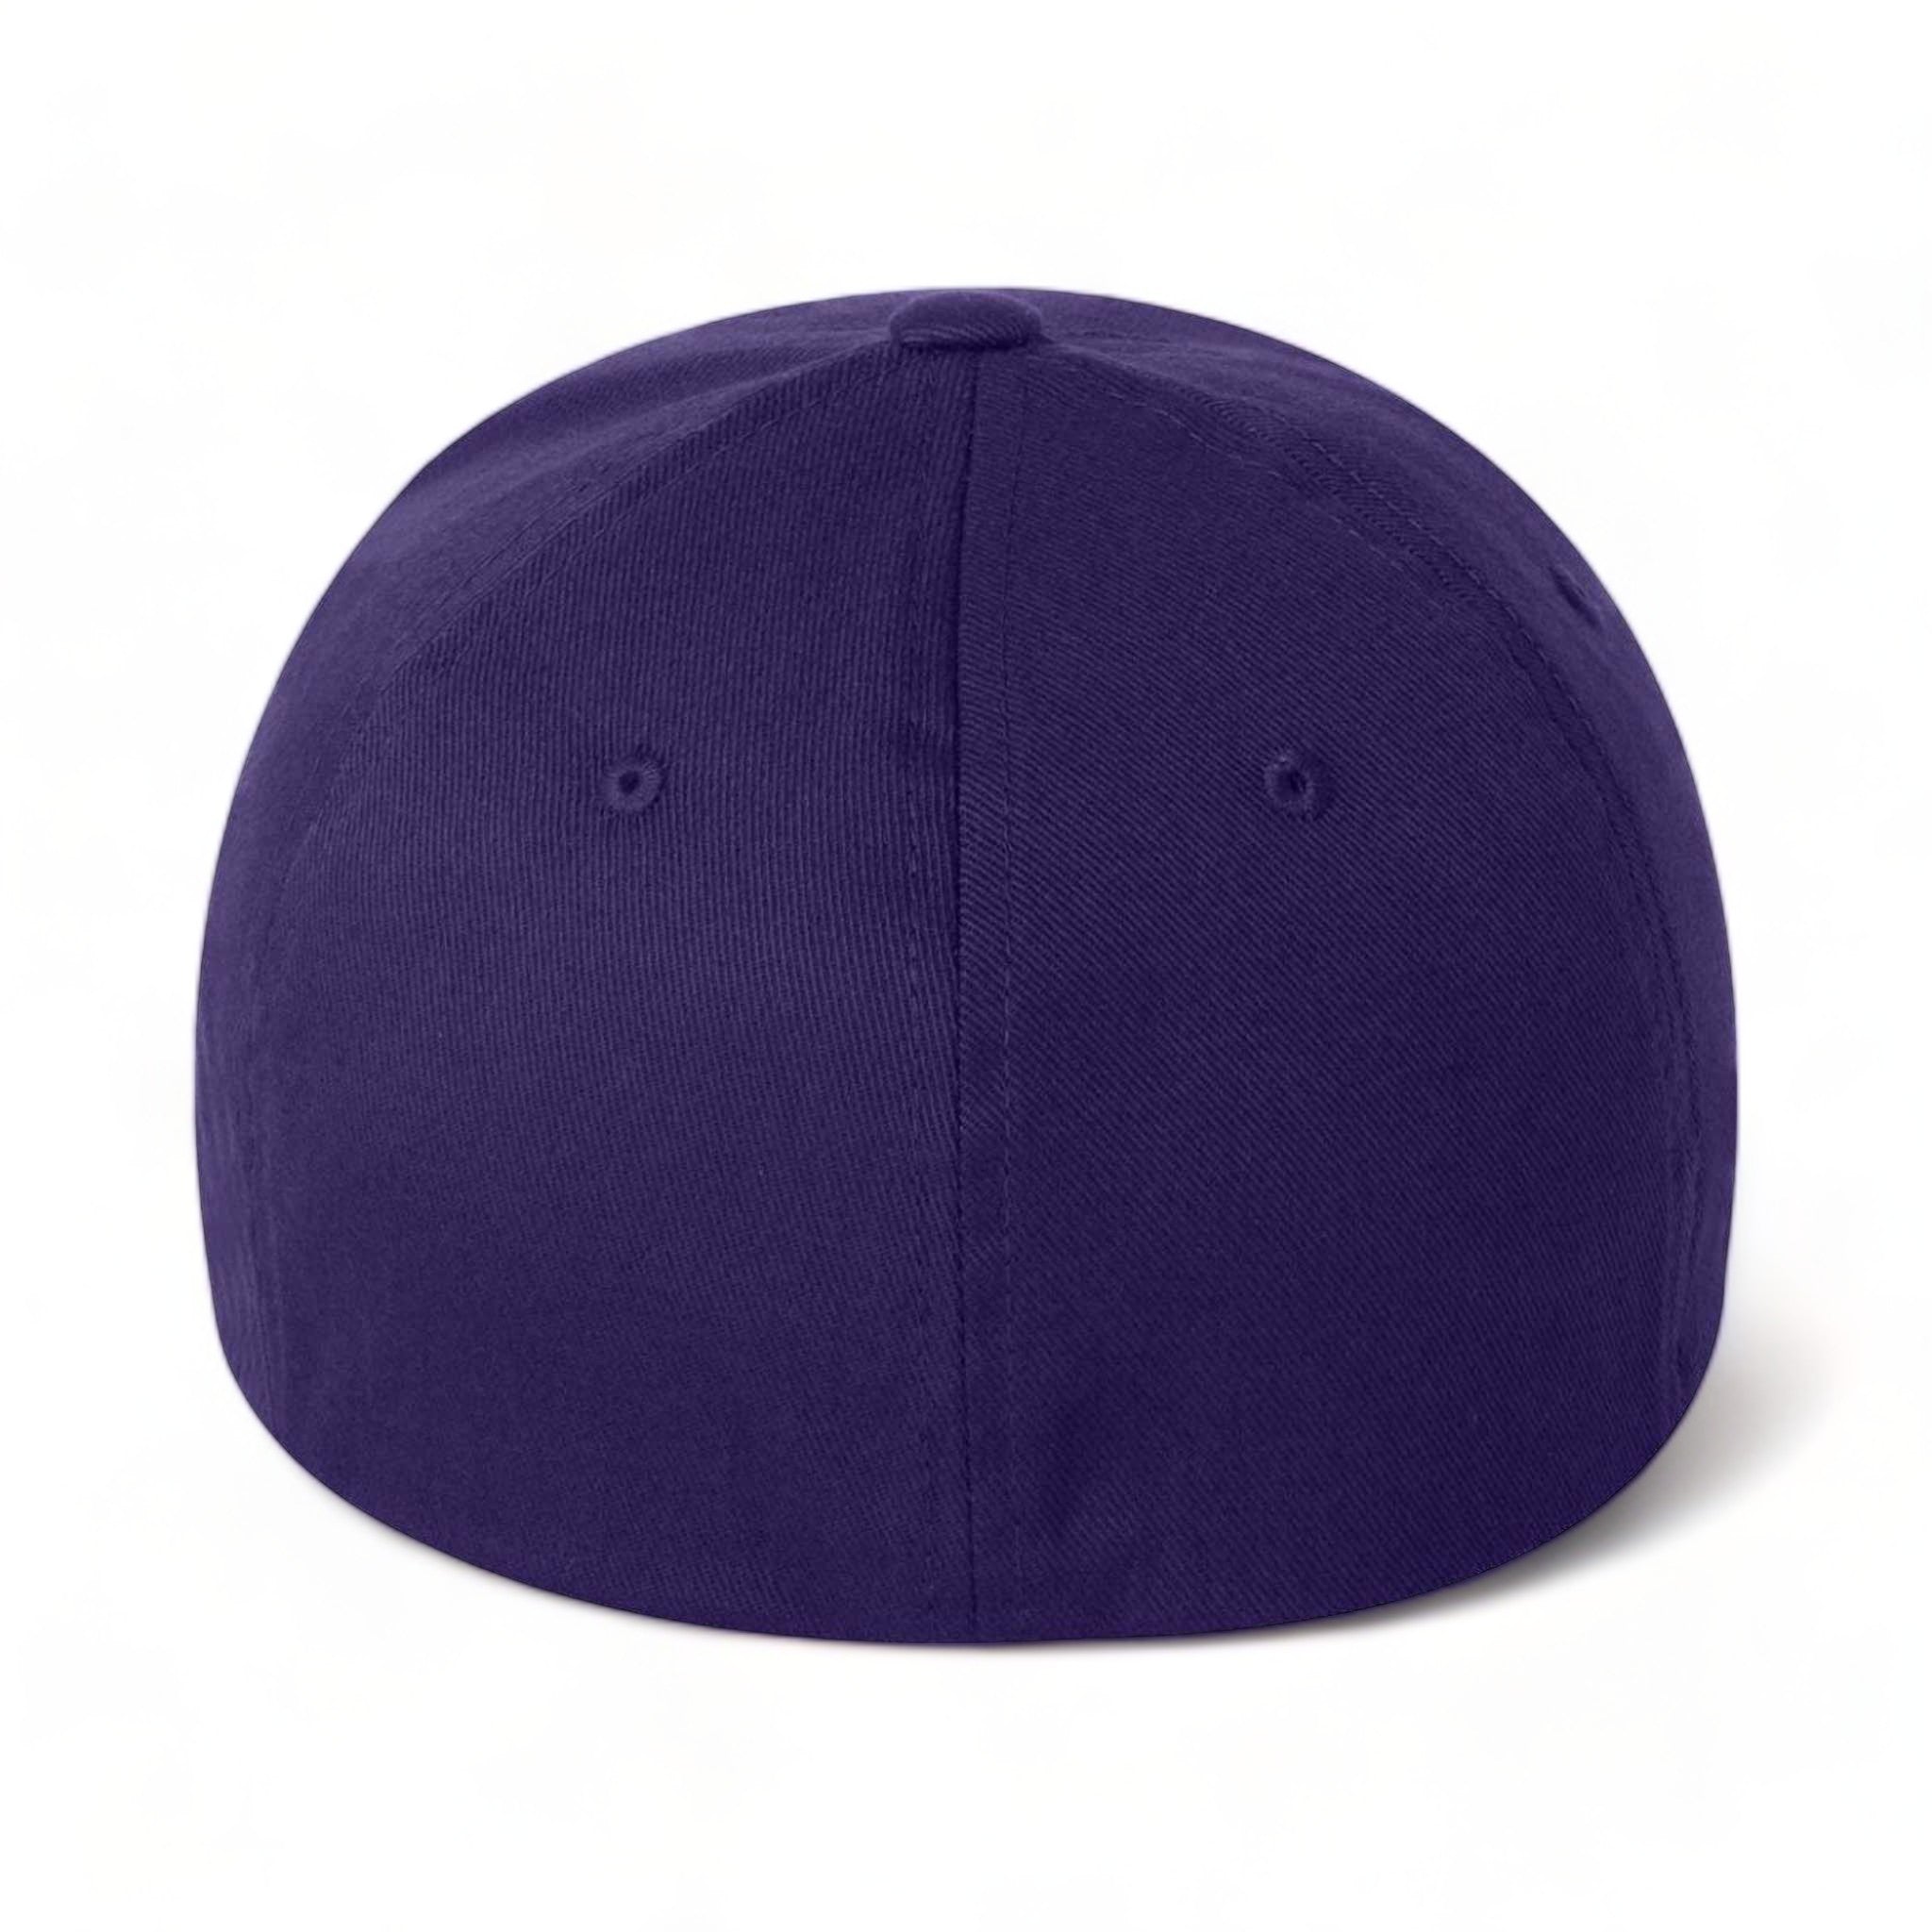 Back view of Flexfit 6277 custom hat in purple